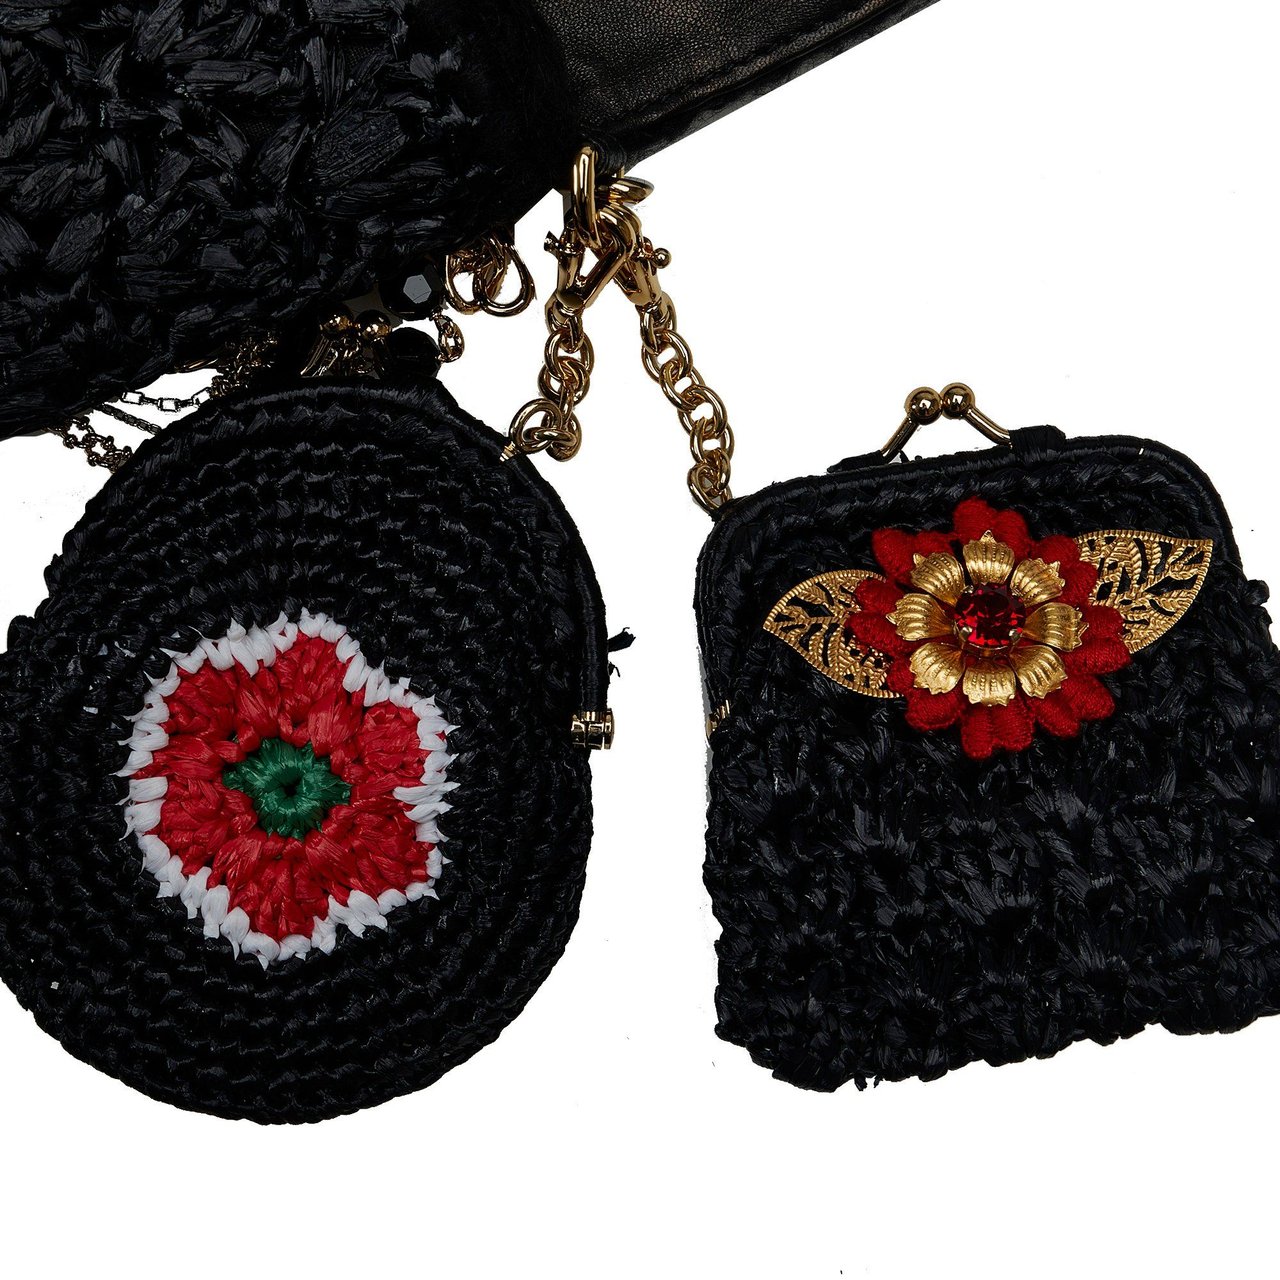 Dolce & Gabbana I Love Sicily Embellished Beaded Straw Shoulder Bag Zwart